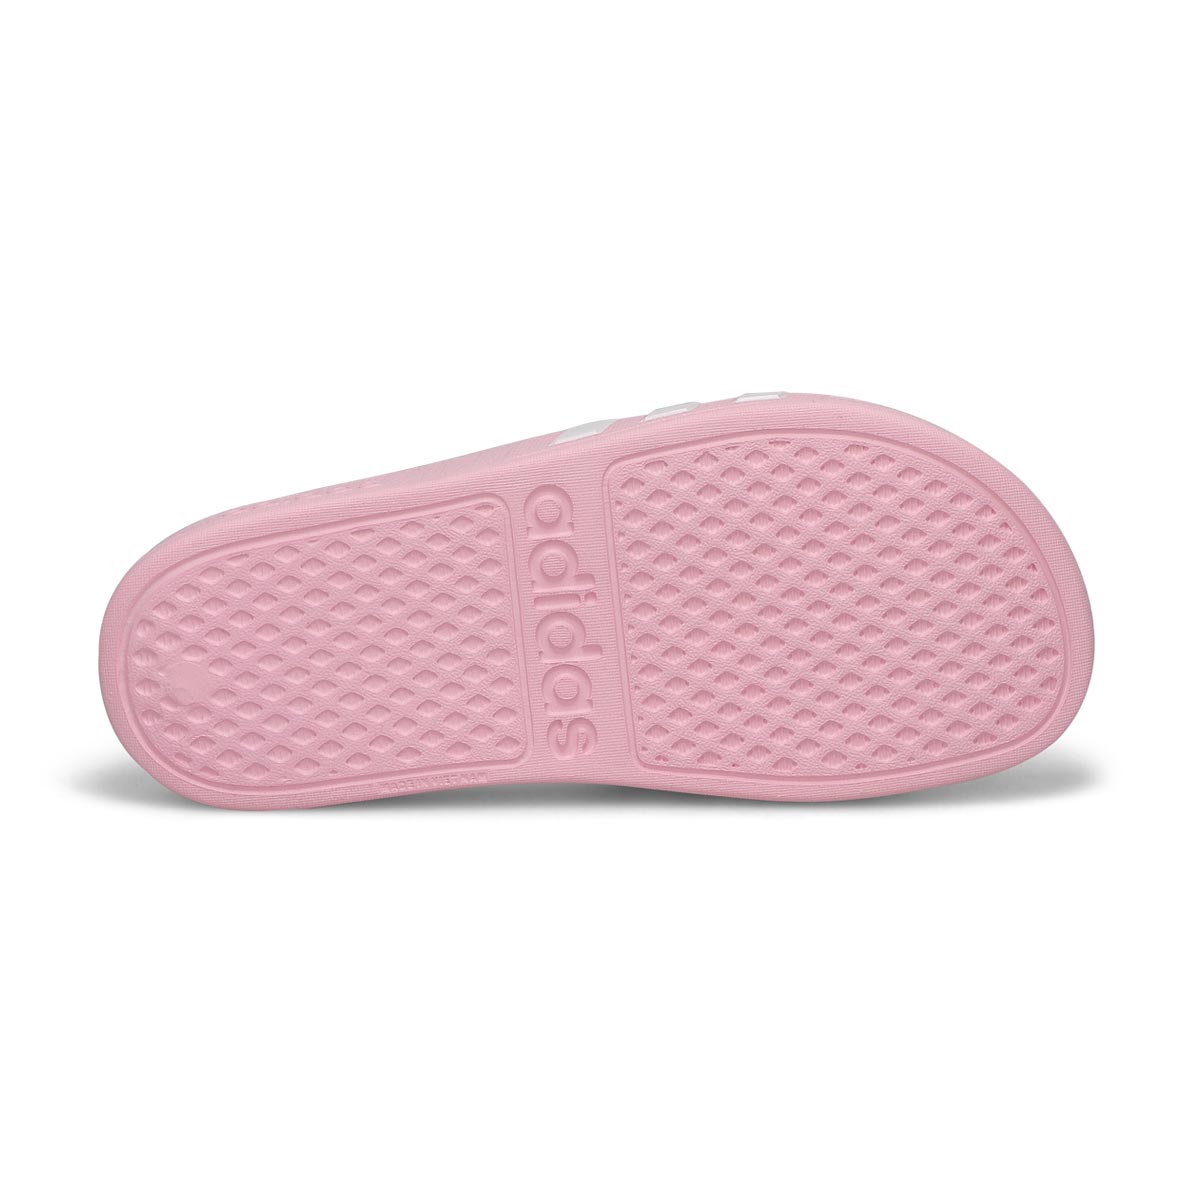 Girls' Adilette Aqua Slide Sandal - Pink/White